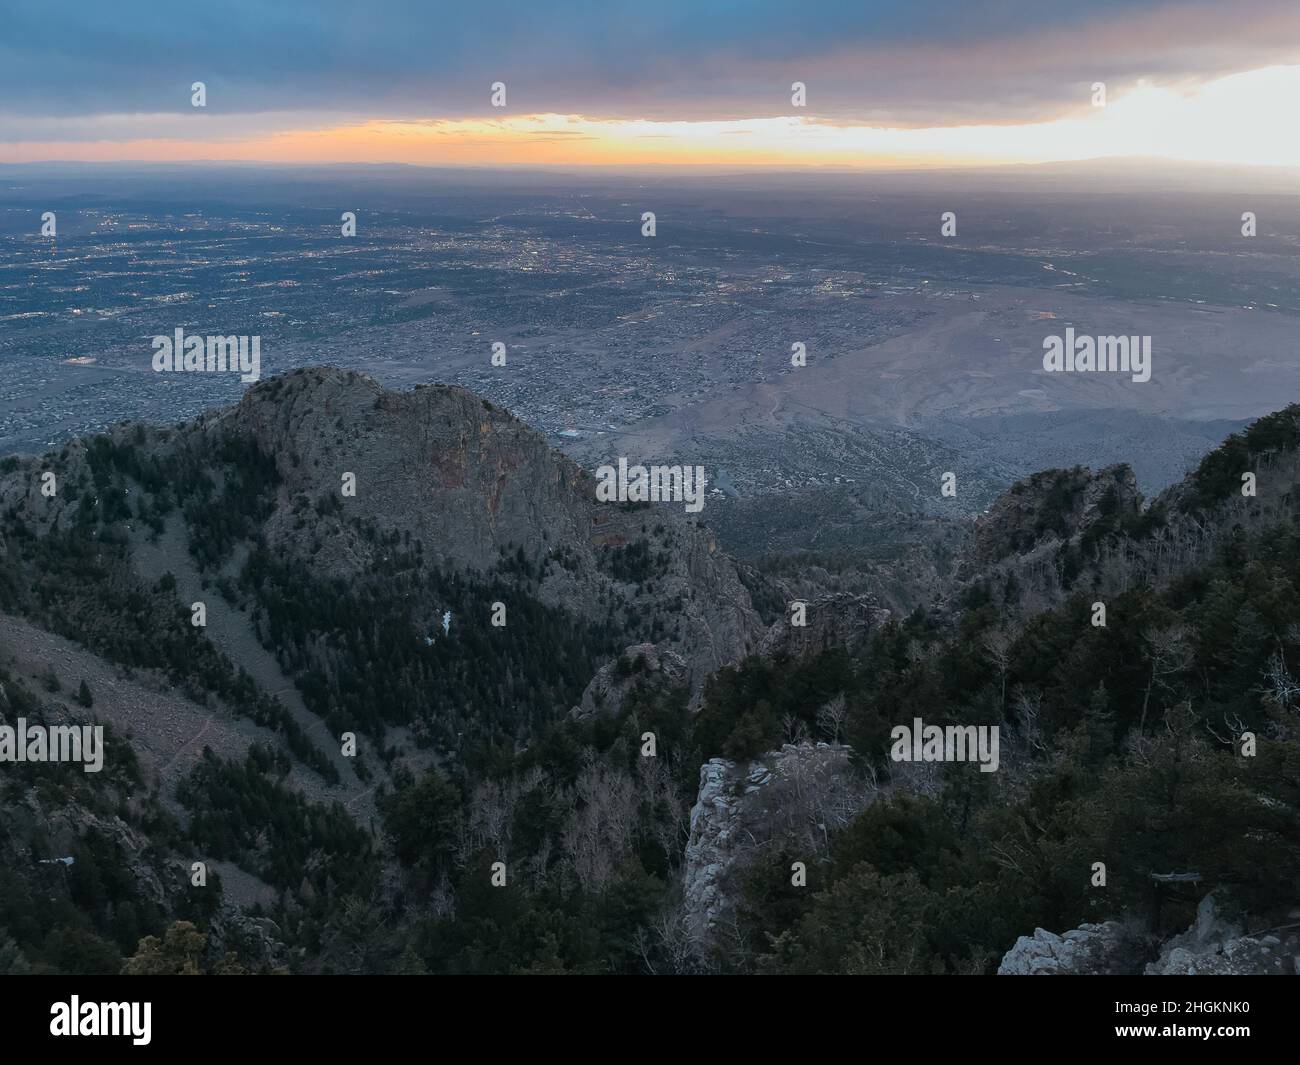 La ville d'Albuquerque vue au coucher du soleil depuis les montagnes Sandia, Nouveau-Mexique, États-Unis Banque D'Images